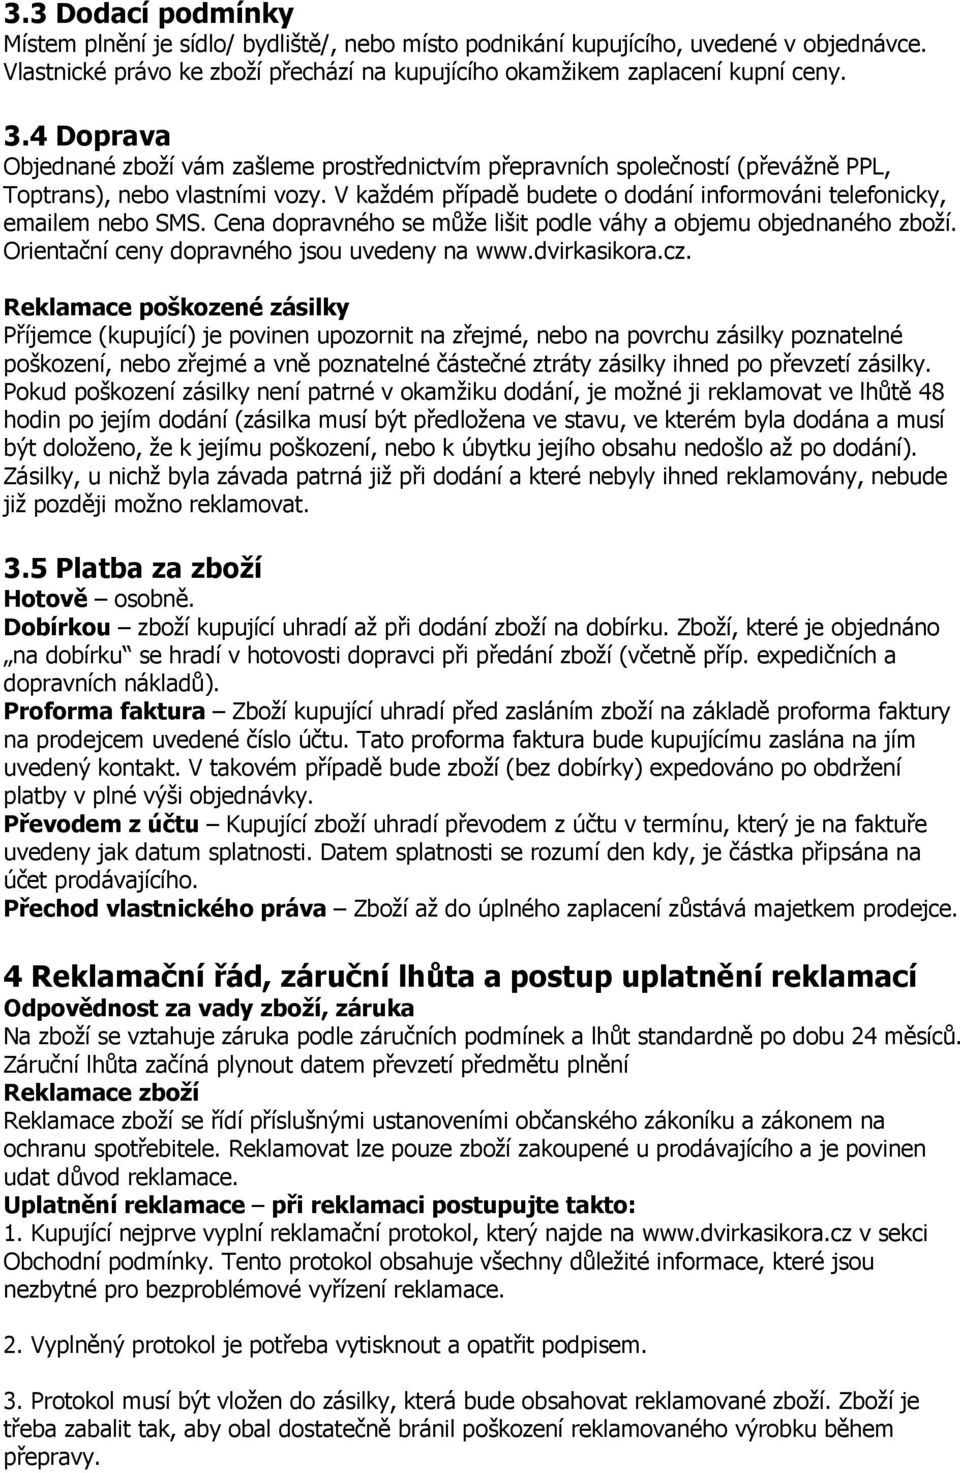 Cena dopravného se může lišit podle váhy a objemu objednaného zboží. Orientační ceny dopravného jsou uvedeny na www.dvirkasikora.cz.